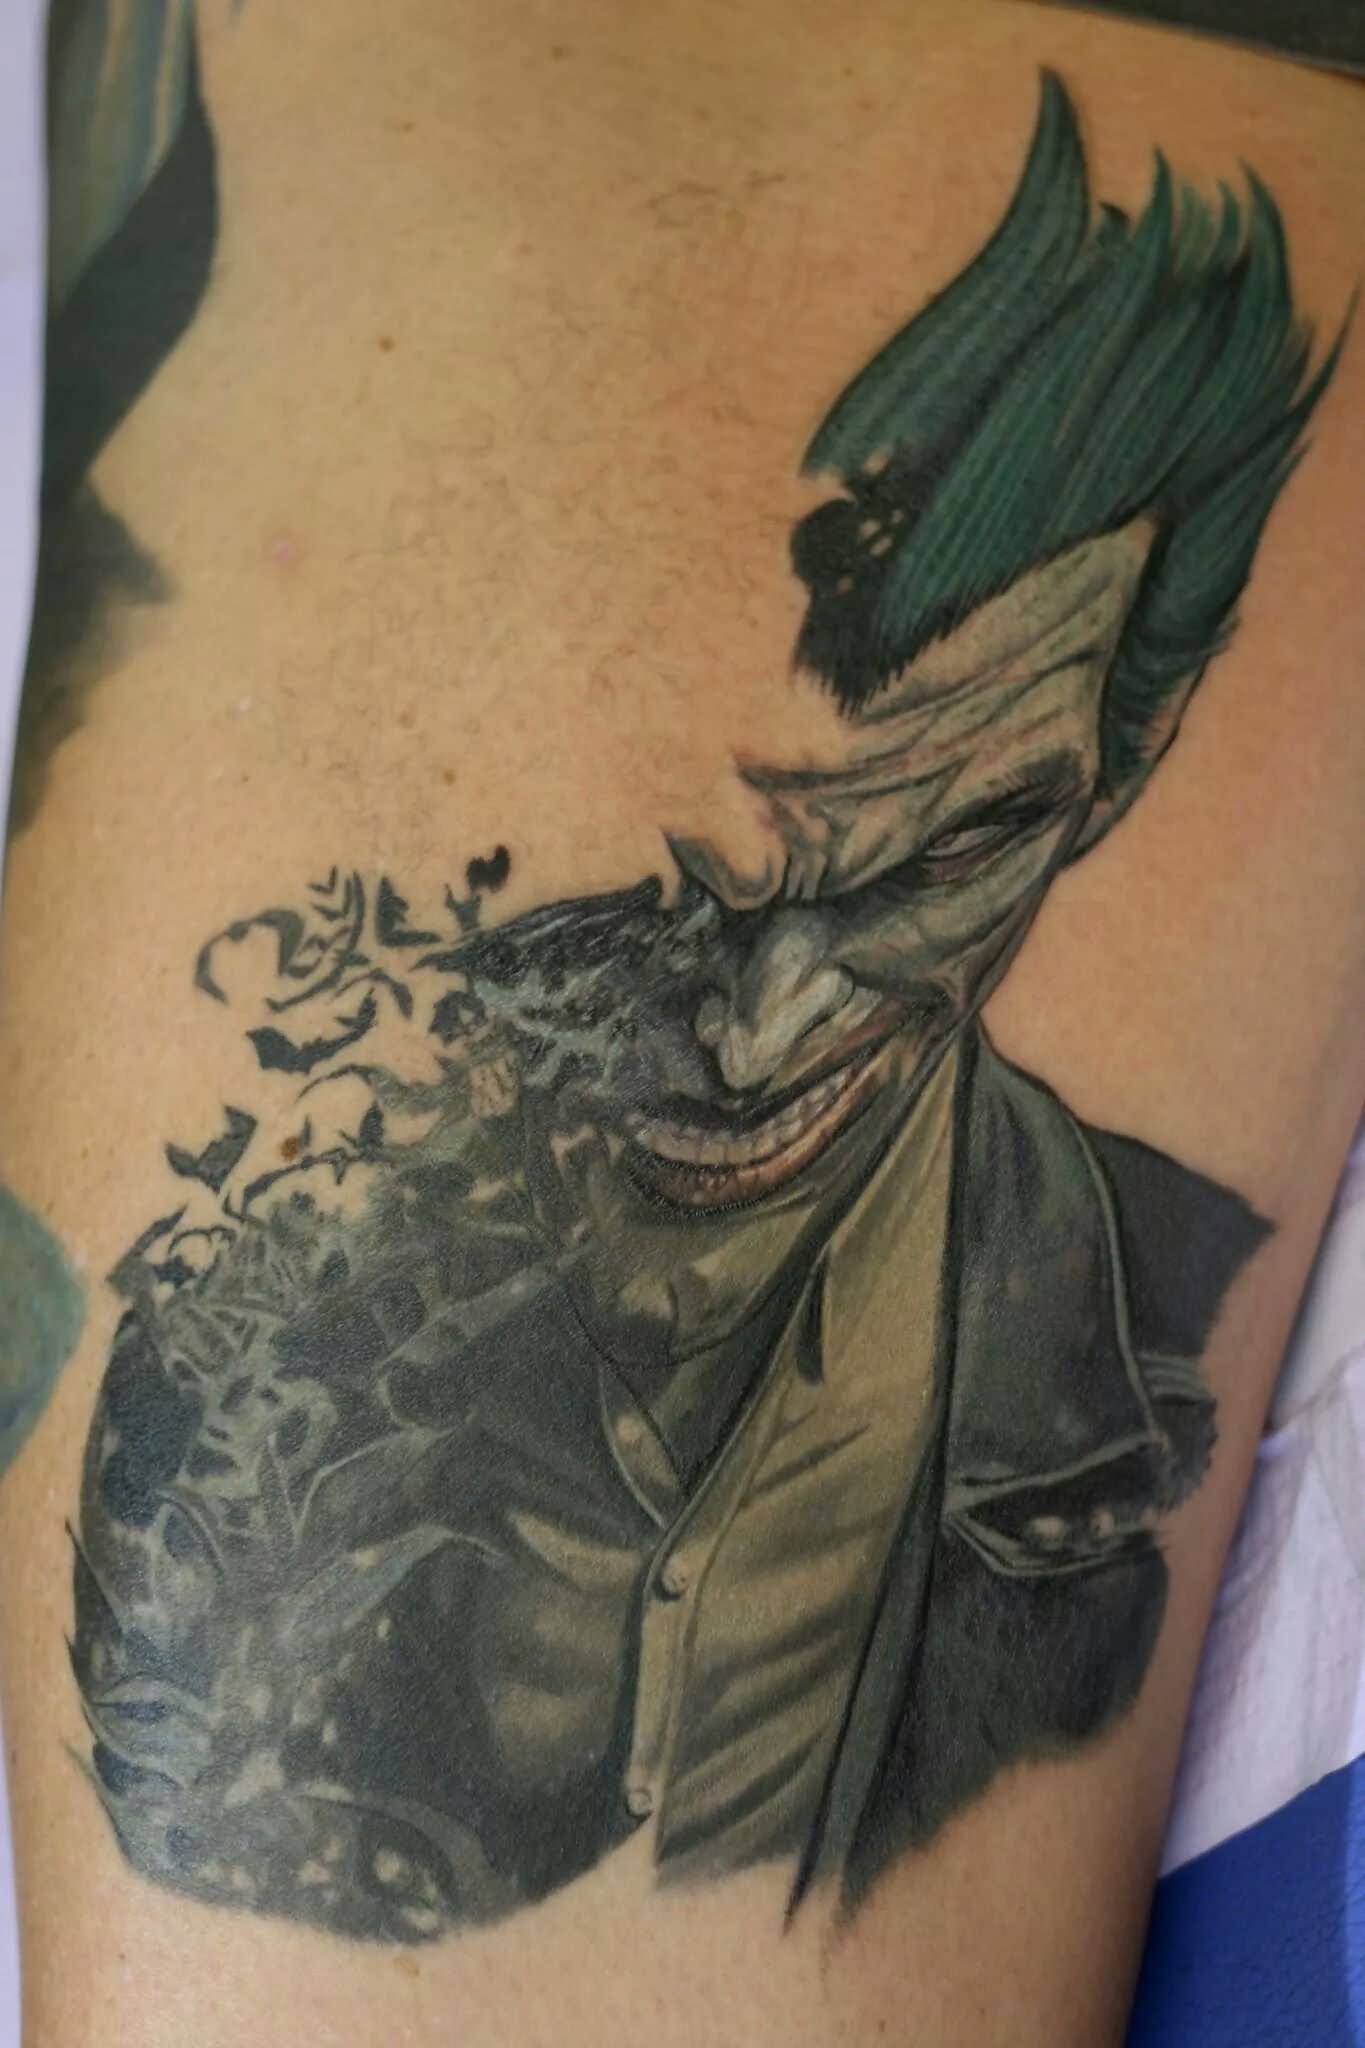 Nice Joker Tattoo